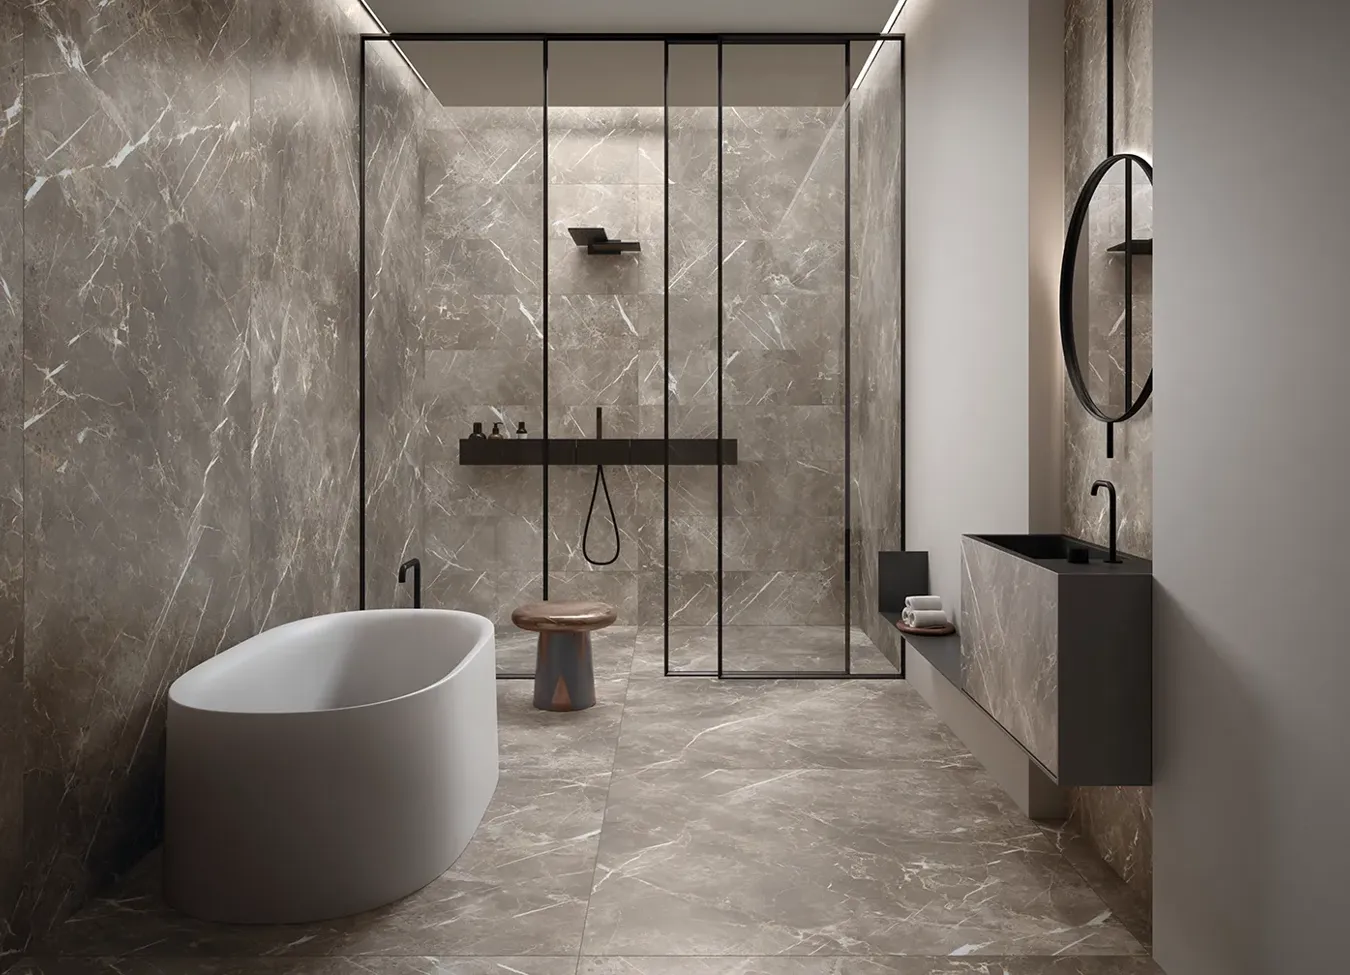 Salle de bain élégante avec baignoire indépendante, receveur de douche en grandes dalles de grès cérame, et détails de finition noire.